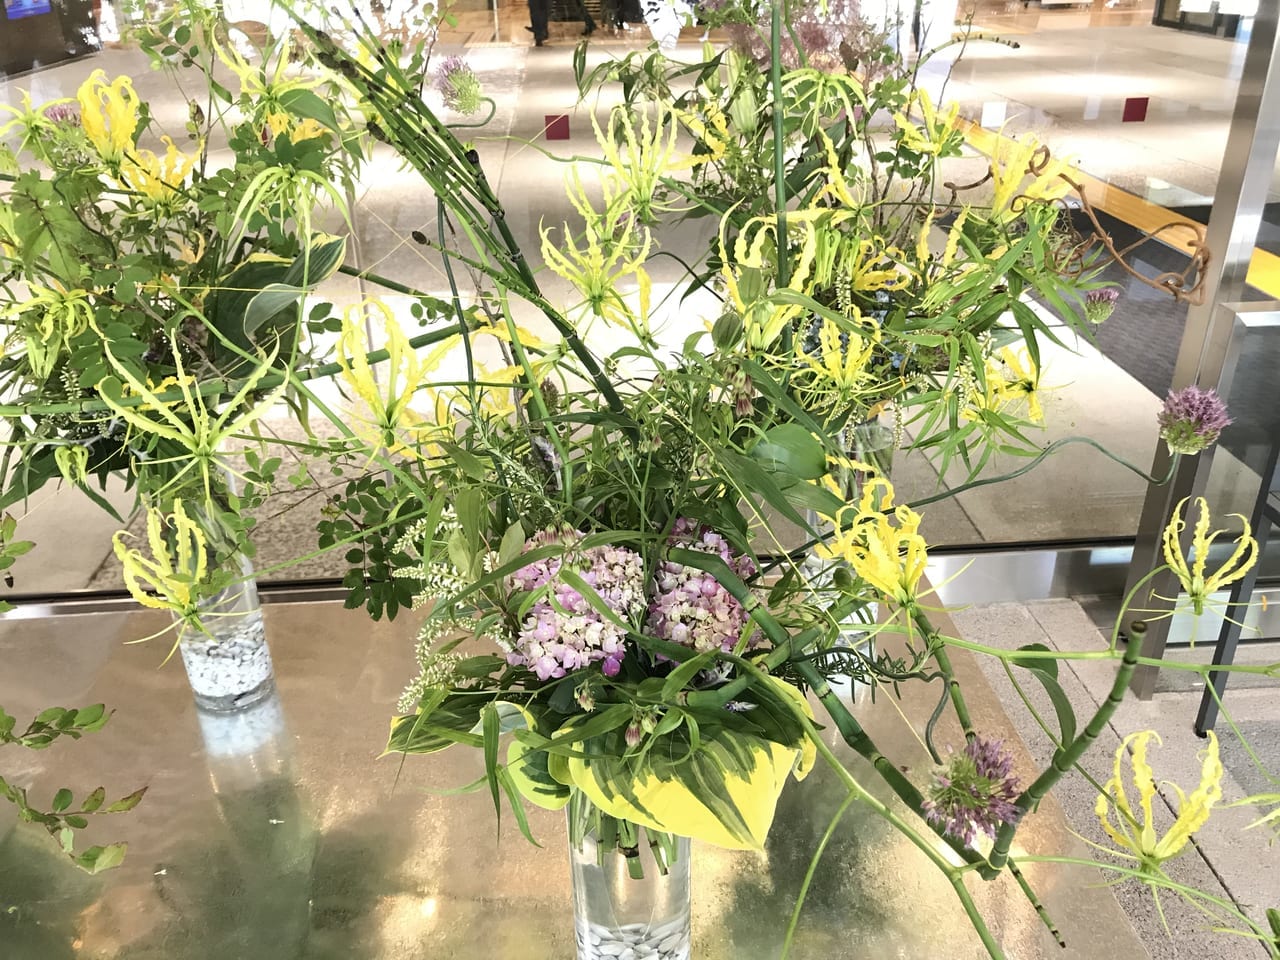 2021年4月「こうちのohana満開プロジェクト」開始。高知市役所での花の展示やInstagramでのフォトコンテンストも開催。